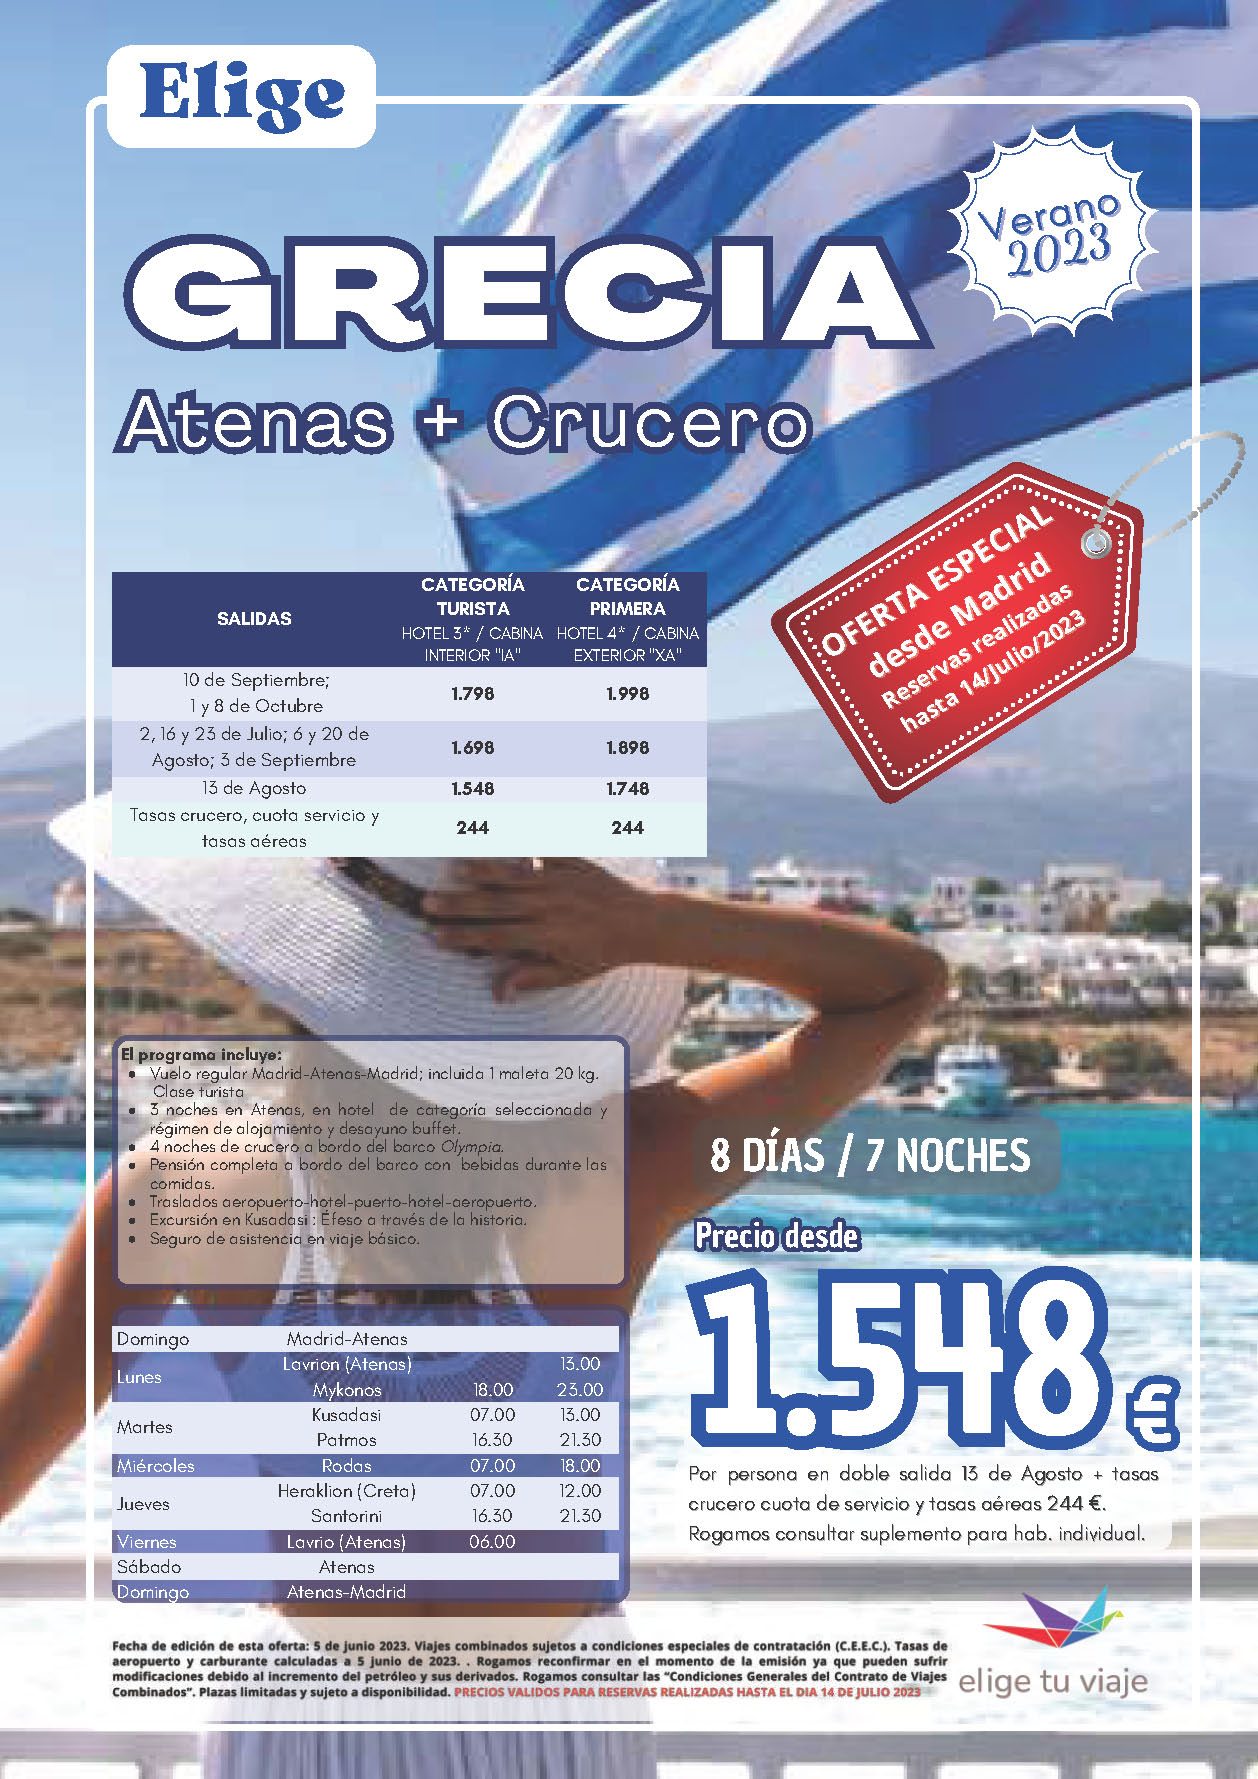 Oferta Elige tu Viaje Agosto Septiembre Octubre 2023 Grecia Atenas y Crucero Mar Egeo 8 dias salidas desde Madrid vuelos Iberia cupos